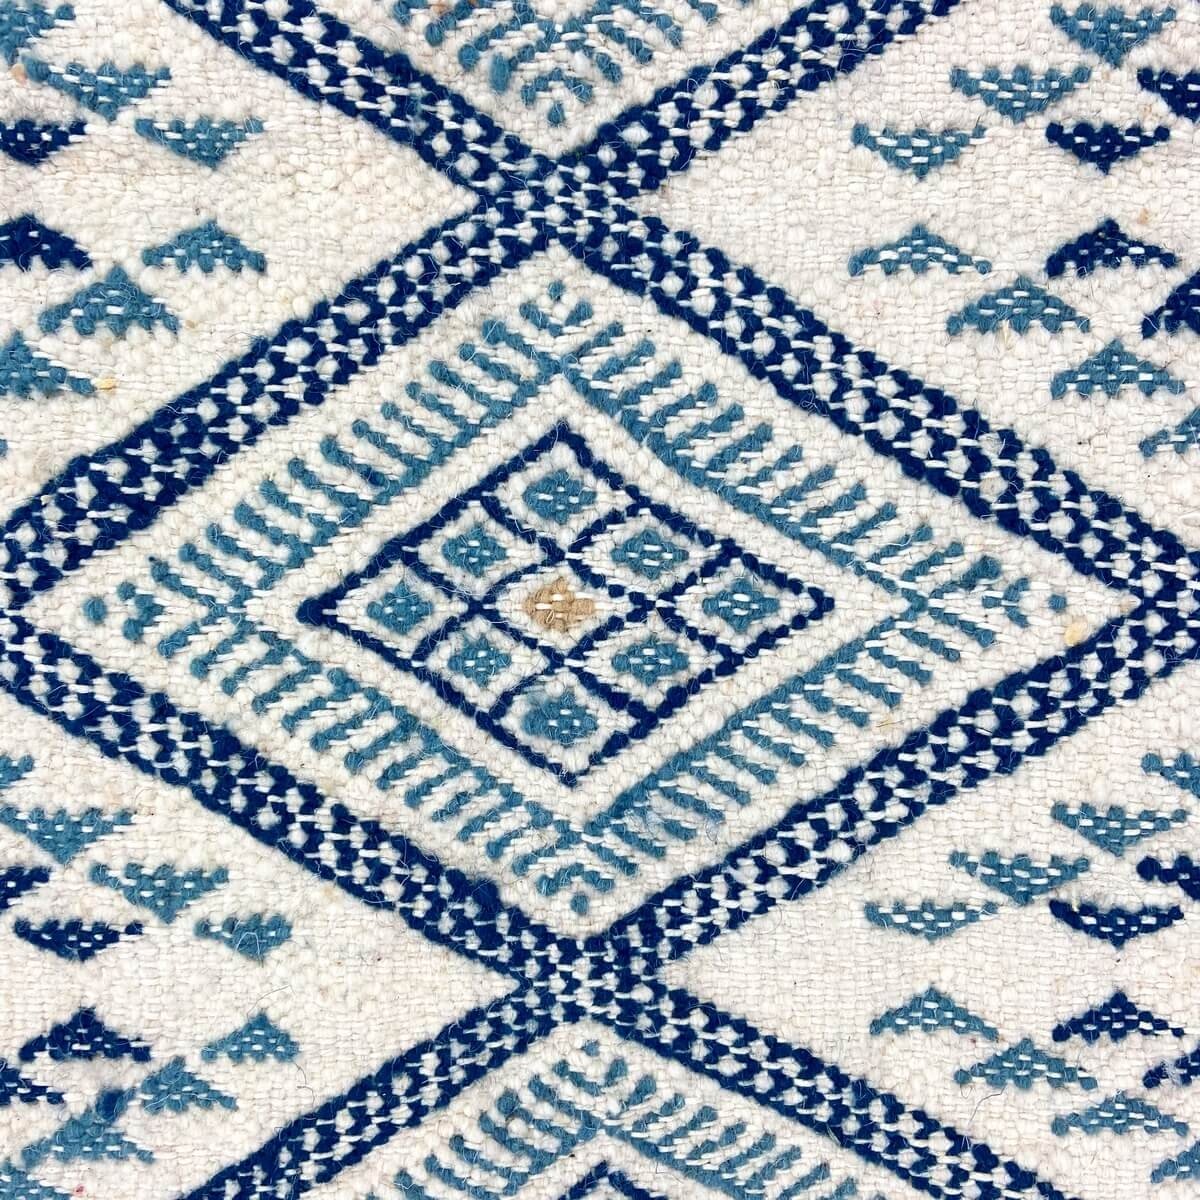 Berber Teppich Teppich Margoum Marsa 120x200 Blau/Weiß (Handgefertigt, Wolle, Tunesien) Tunesischer Margoum-Teppich aus der Stad